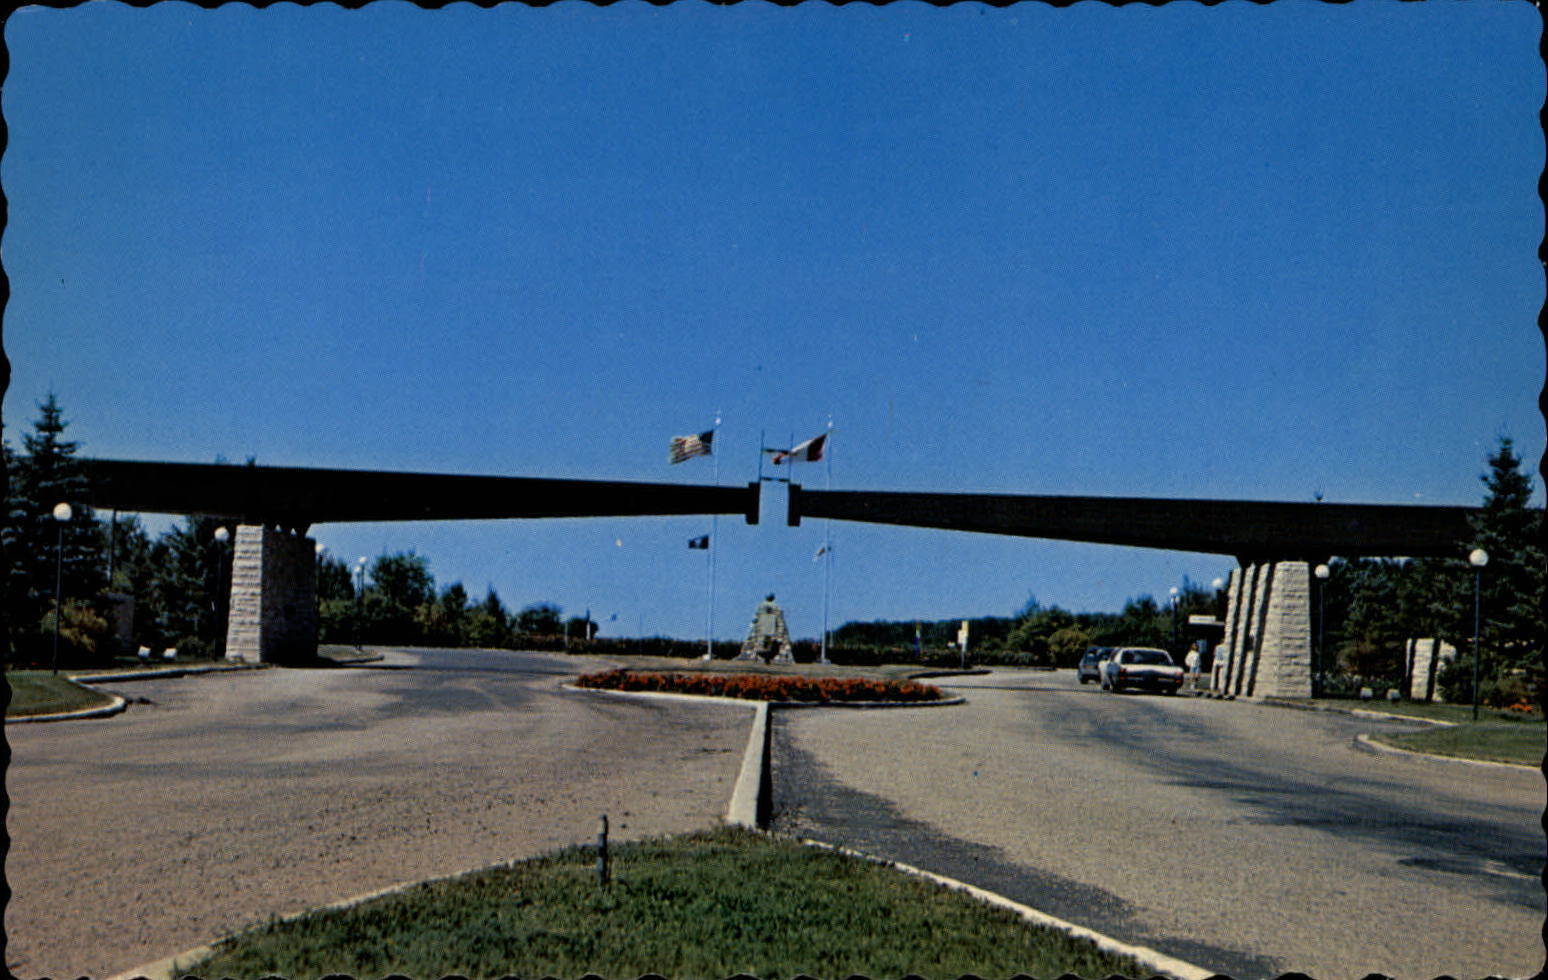 Entrance International Peace Garden Manitoba Canada ~ 1950-60s postcard